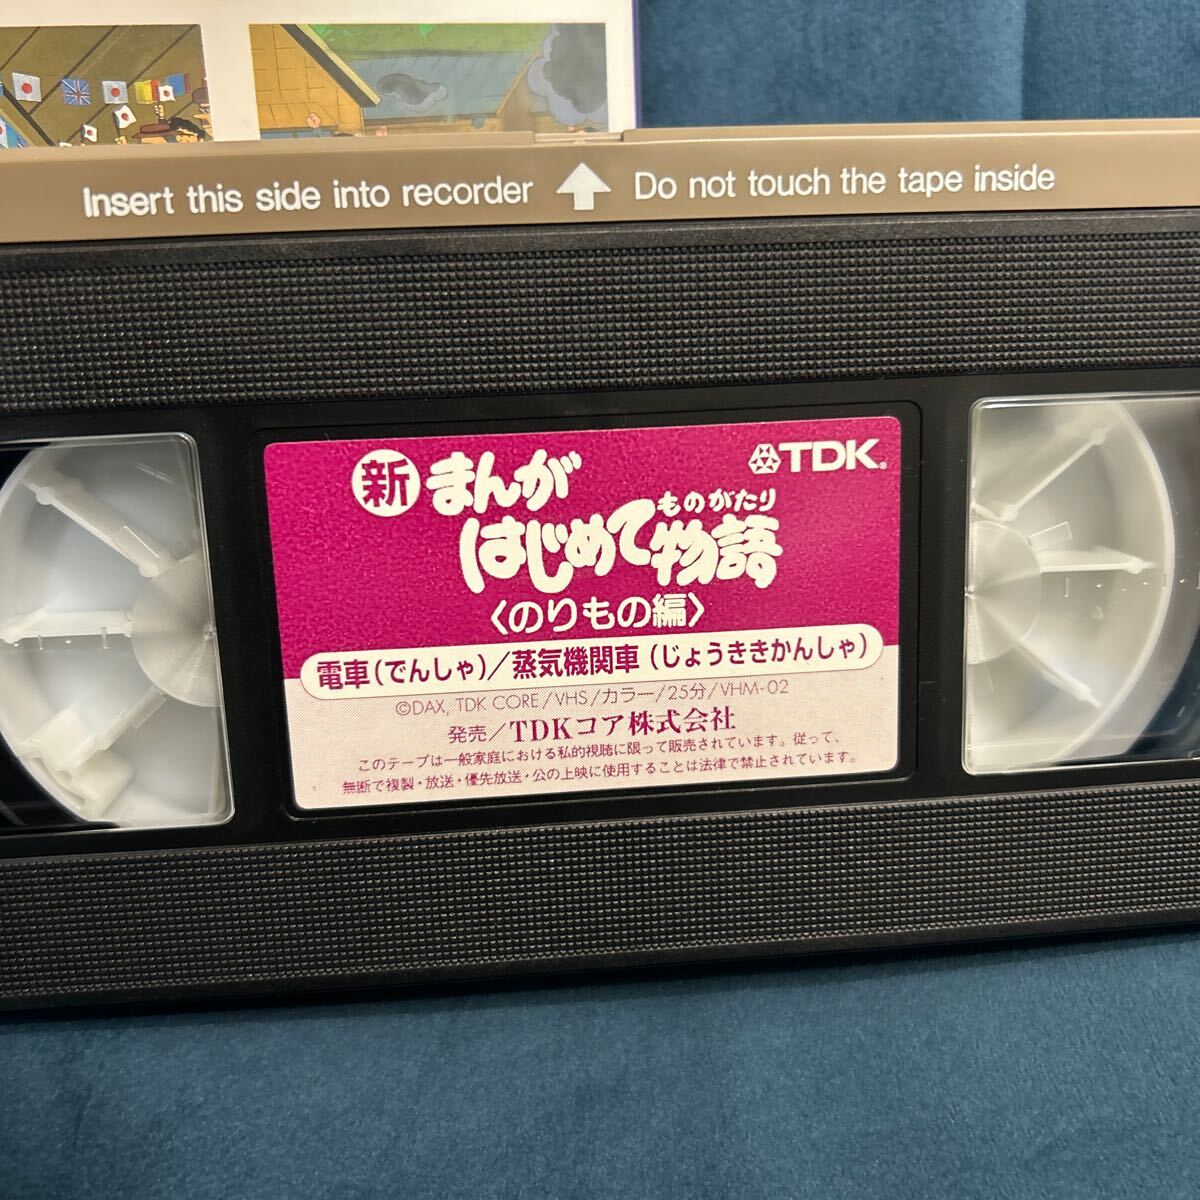 VHS видеолента новый ... впервые . история клей было использовано сборник mog язык телевизор аниме 